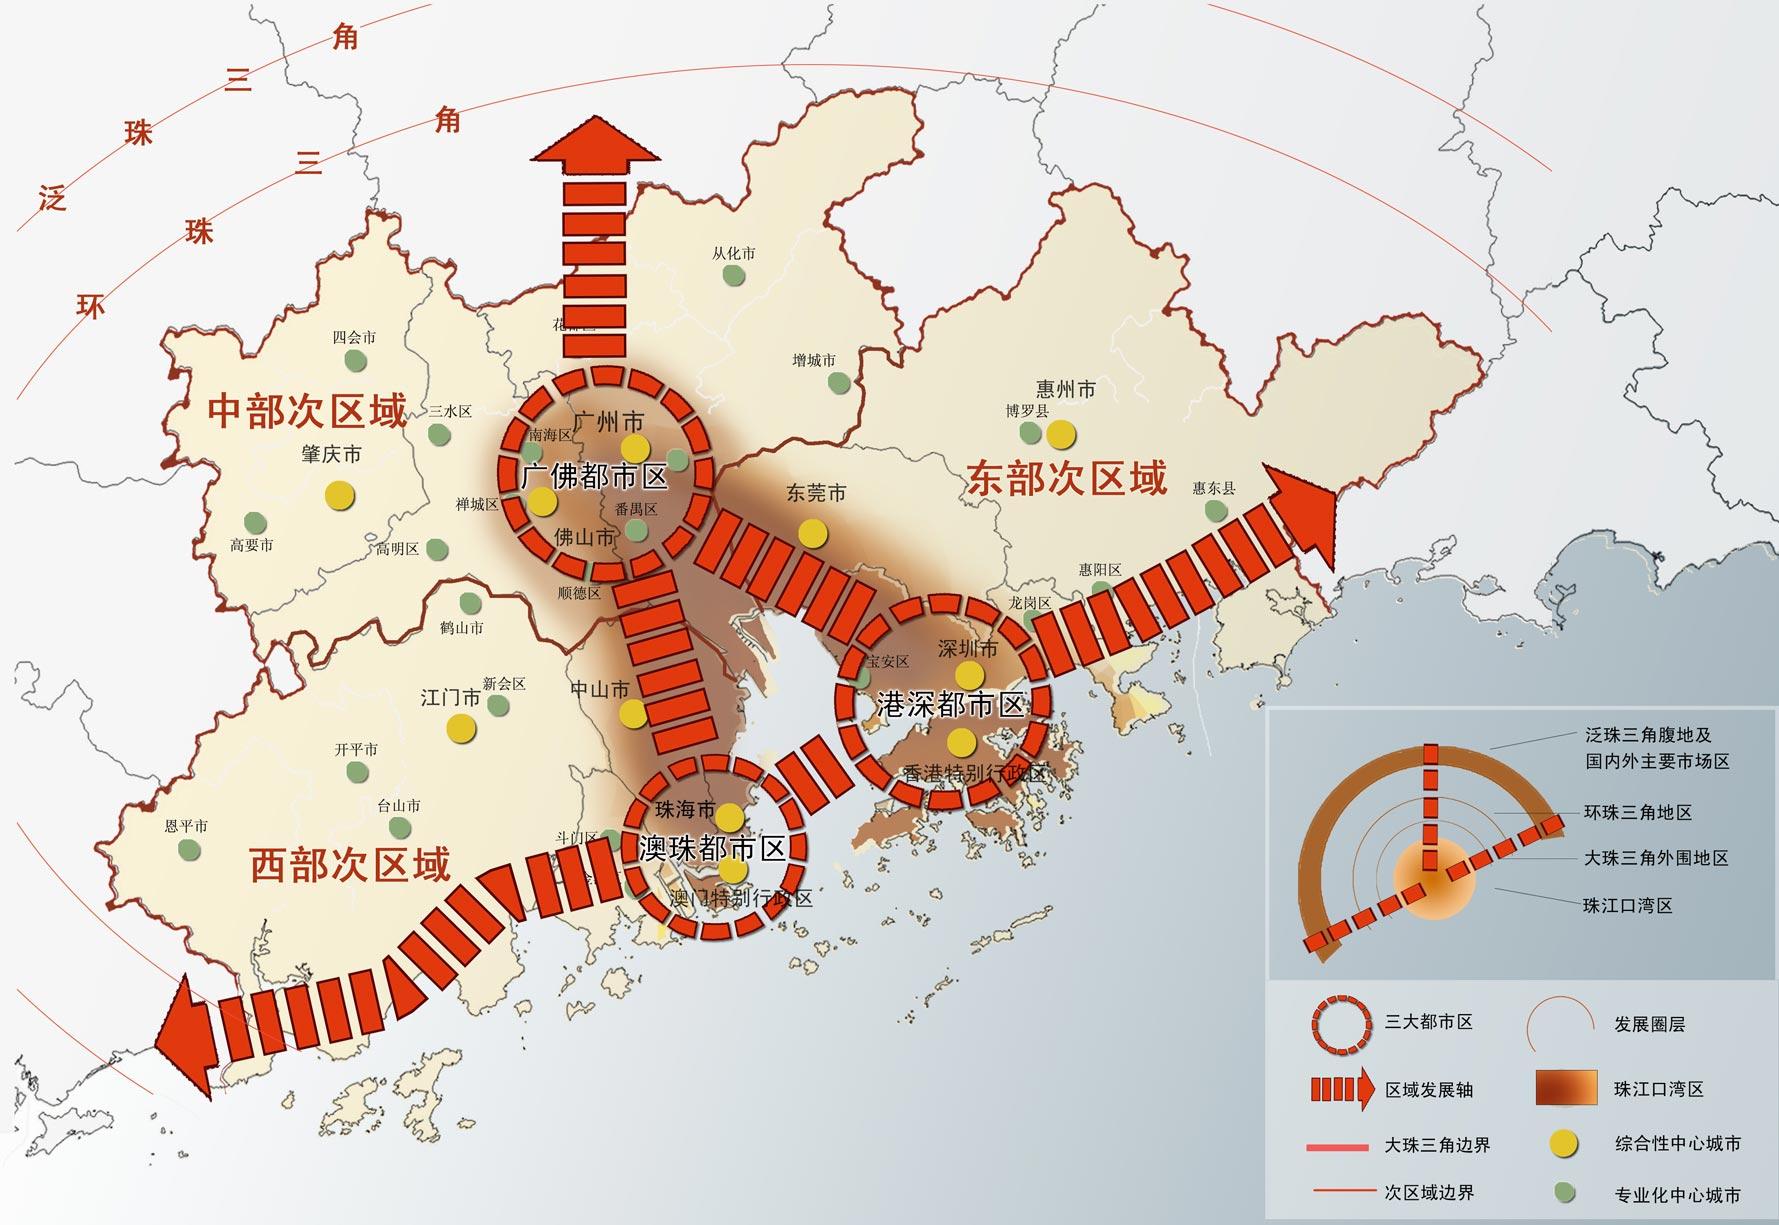 深圳特区和香港地区最新卫星地图-深圳特区和香港地区2021年2月份卫星影像@北京亿景图